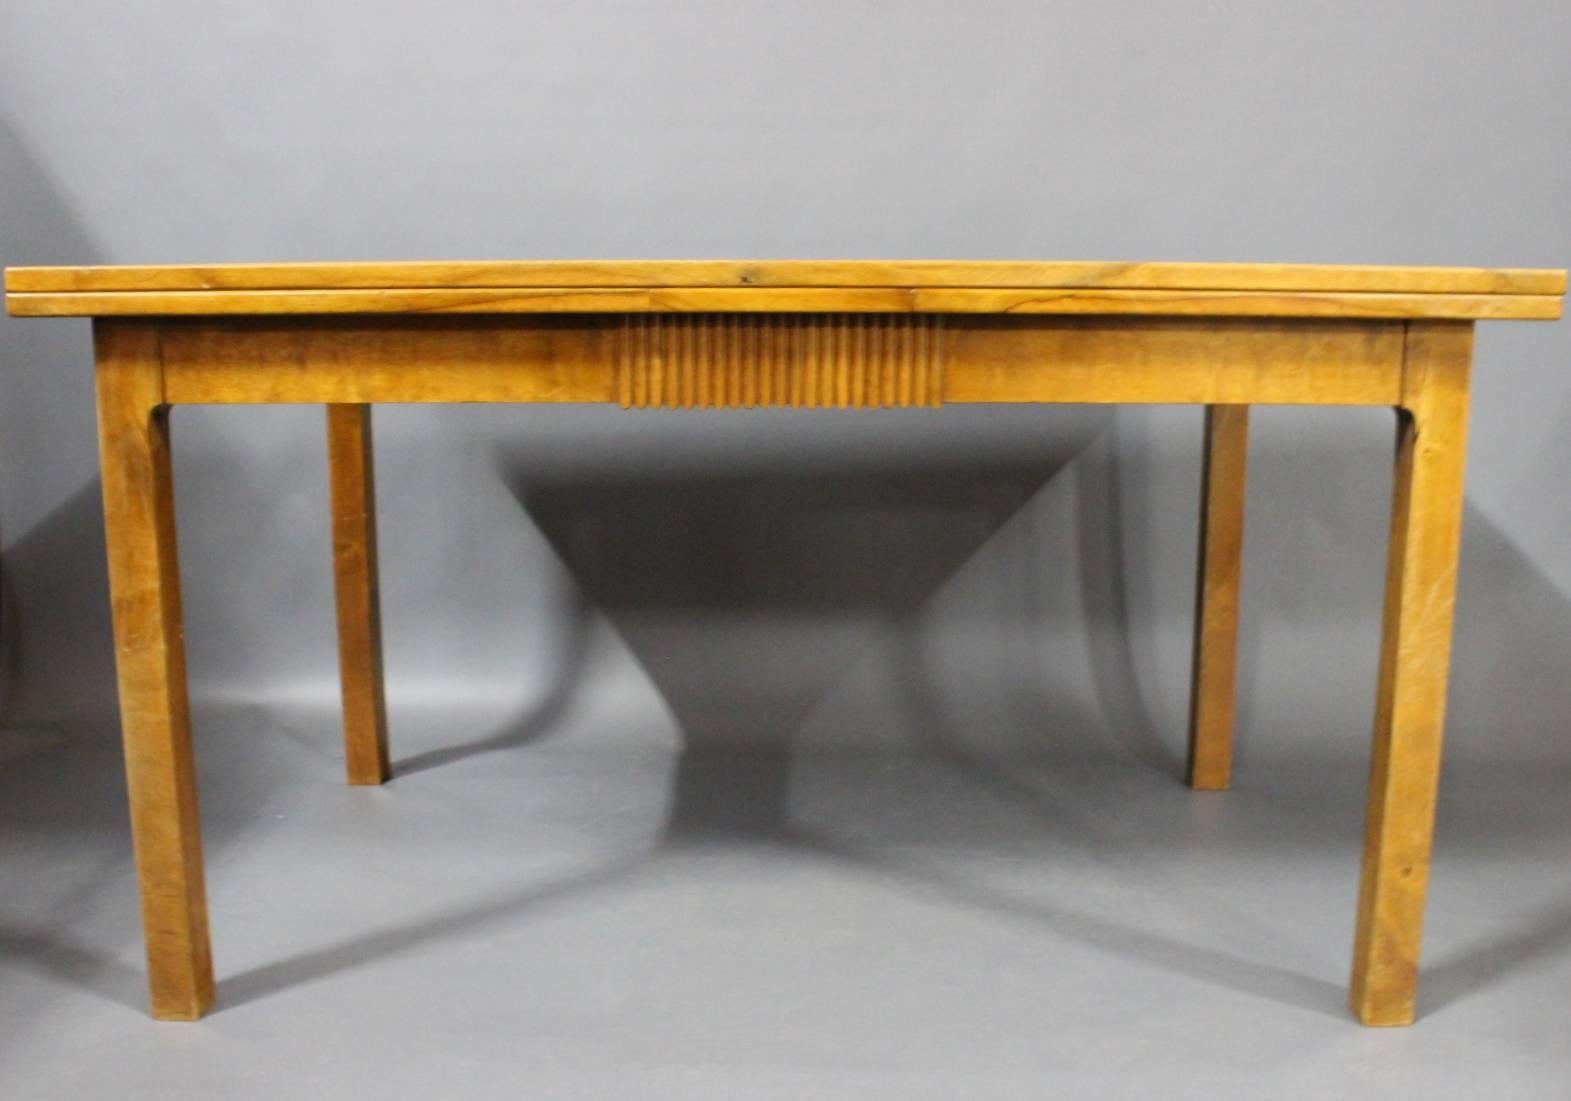 La table coulissante en noyer, fabriquée par un maître charpentier danois et représentative du design danois, date des années 1940 et témoigne d'une époque caractérisée par le savoir-faire artisanal et l'élégance intemporelle.

Les tons chauds et le